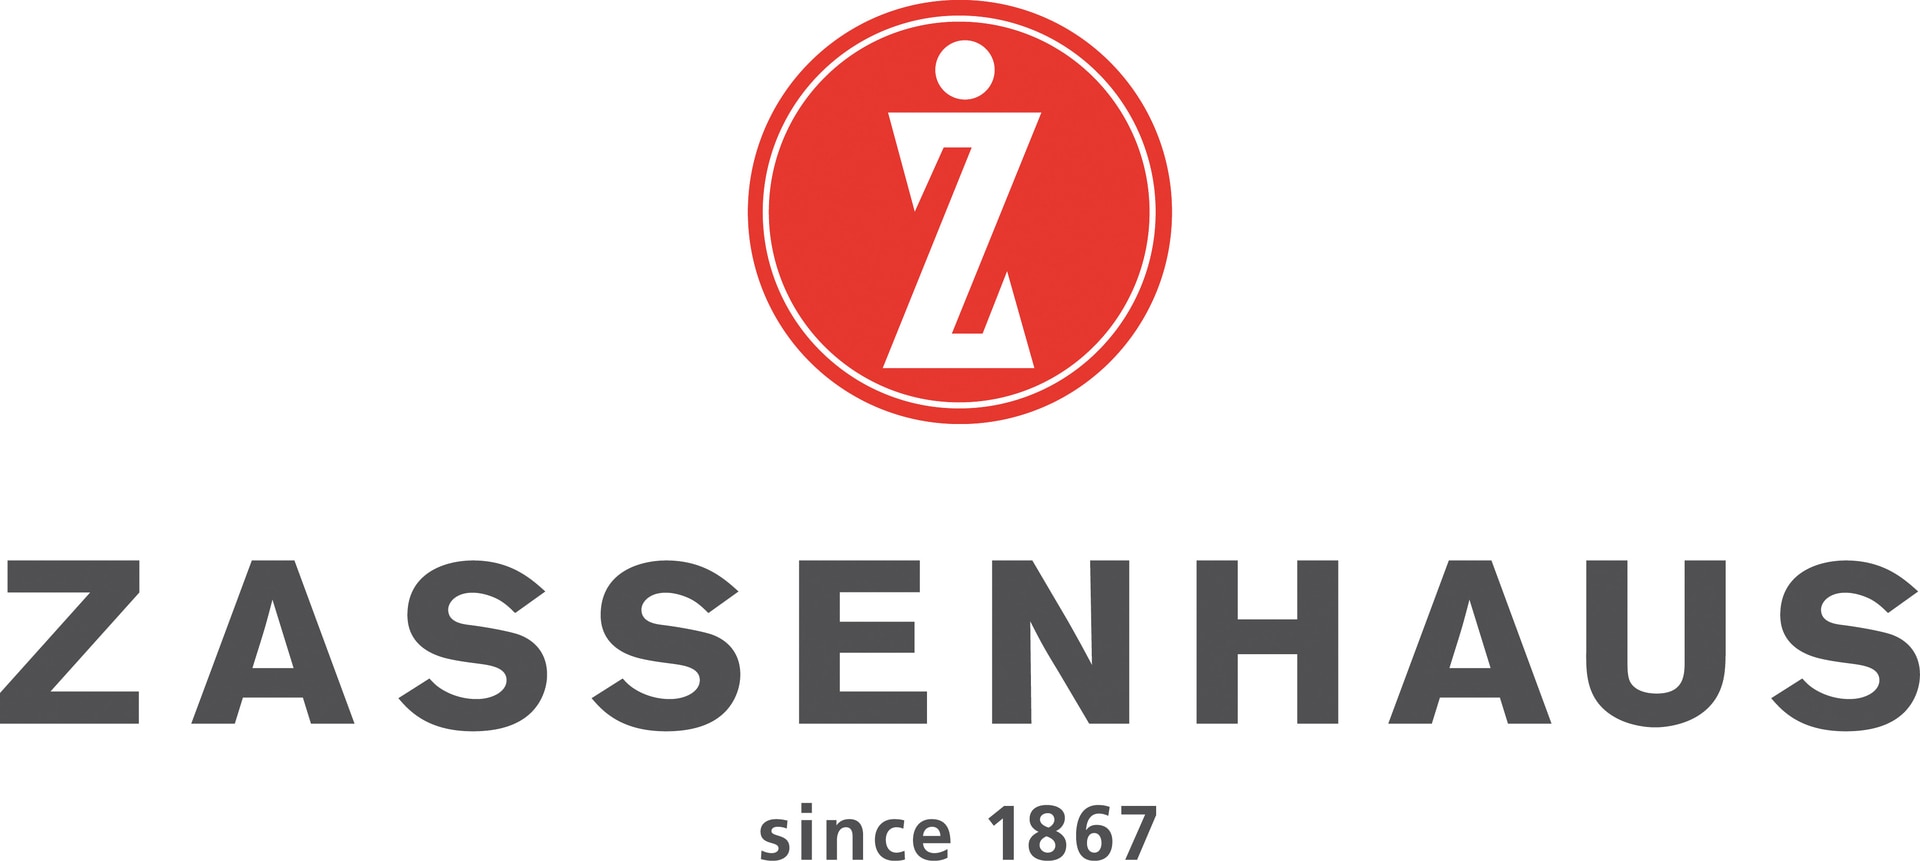 ZASSENHAUS-logo